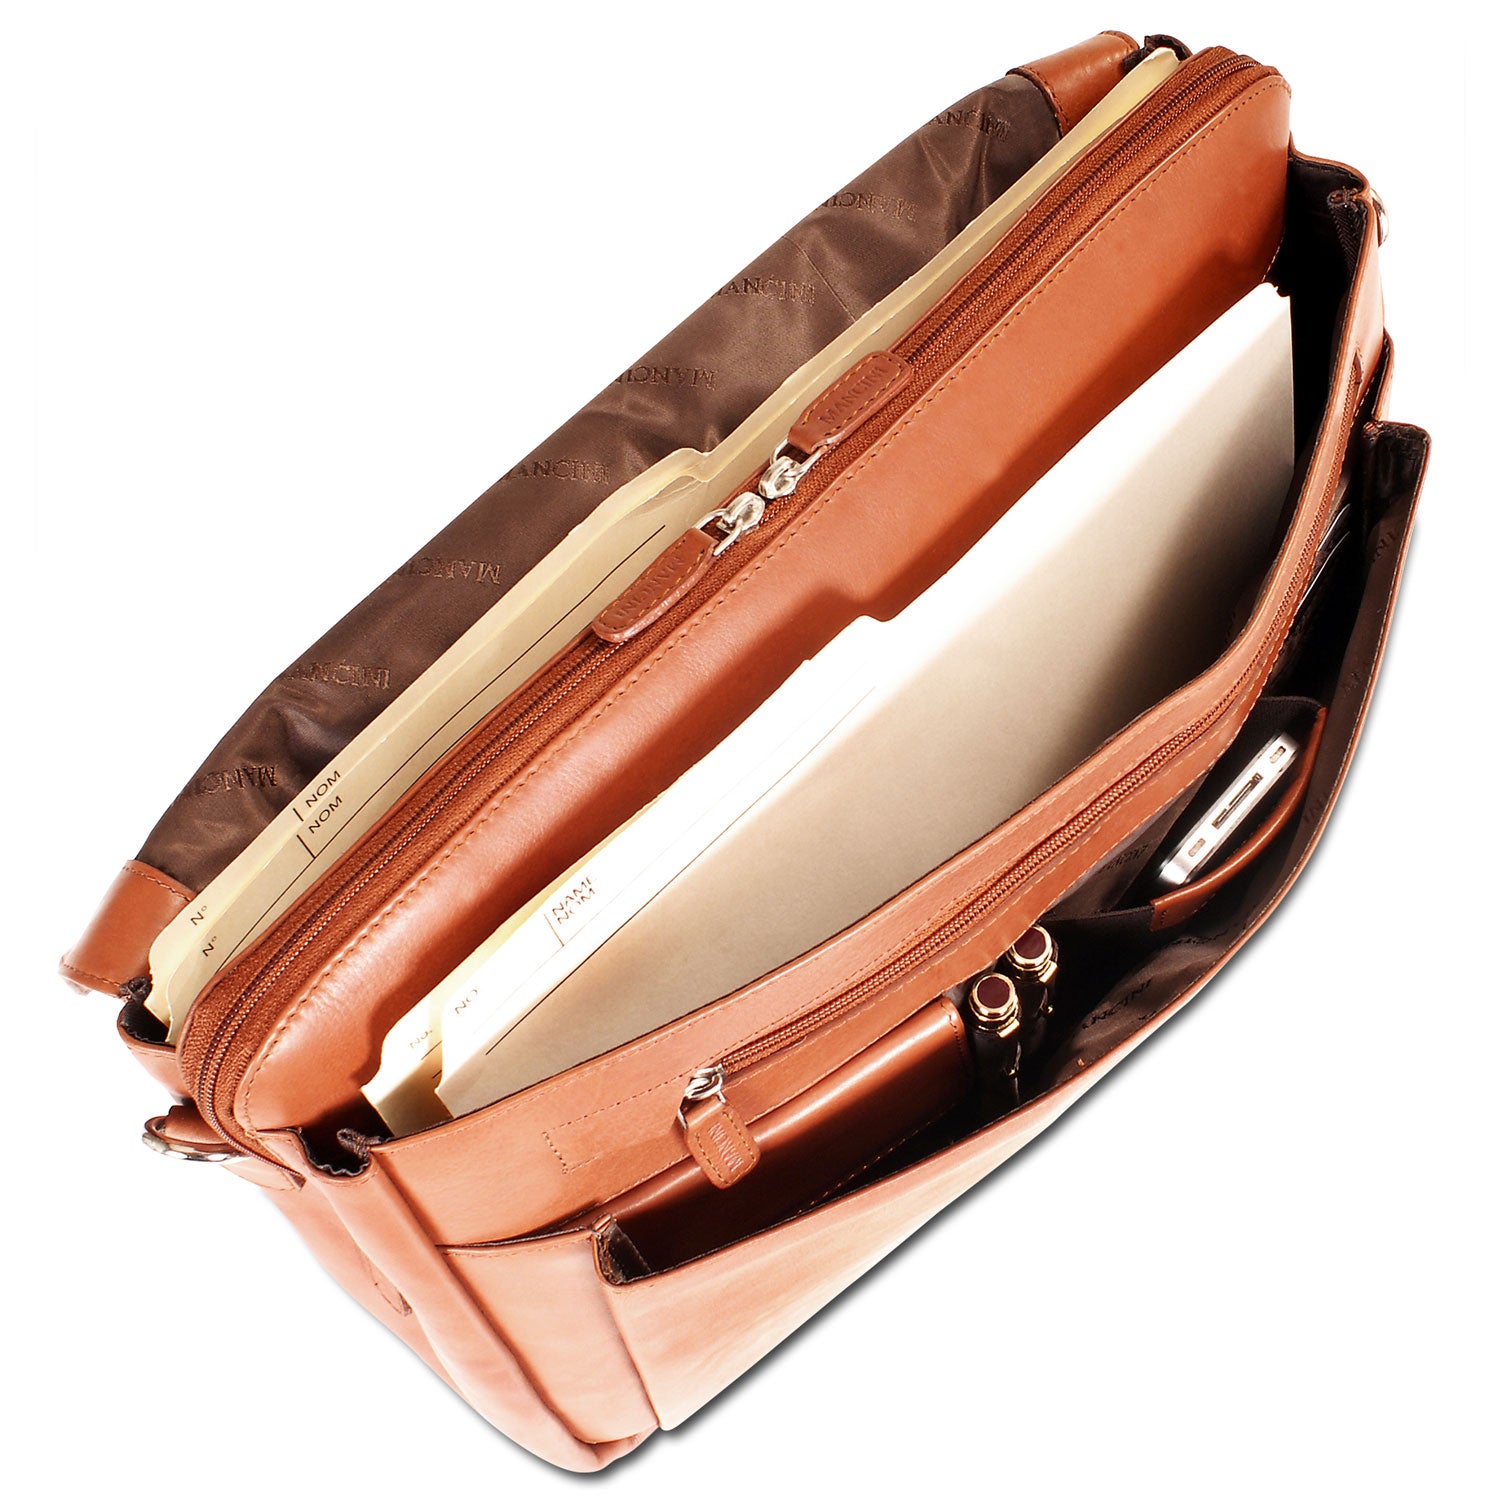 Mancini Leather Triple Compartment Flap Briefcase for 15" Laptop / Tablet, 15" x 4.25" x 10.25", Cognac